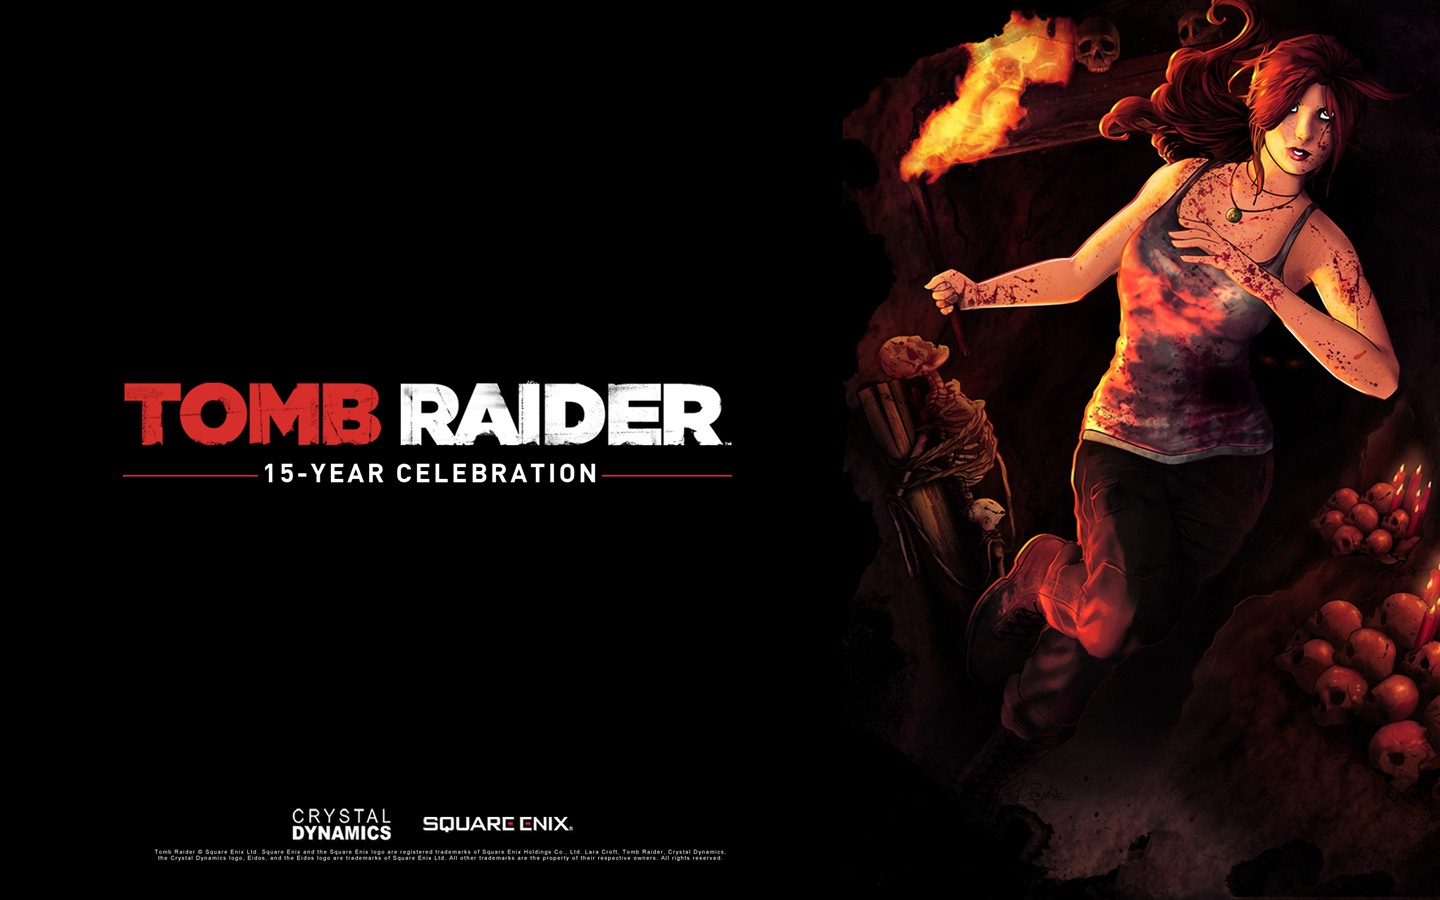 Tomb Raider 15-Year Celebration 古墓丽影15周年纪念版 高清壁纸4 - 1440x900